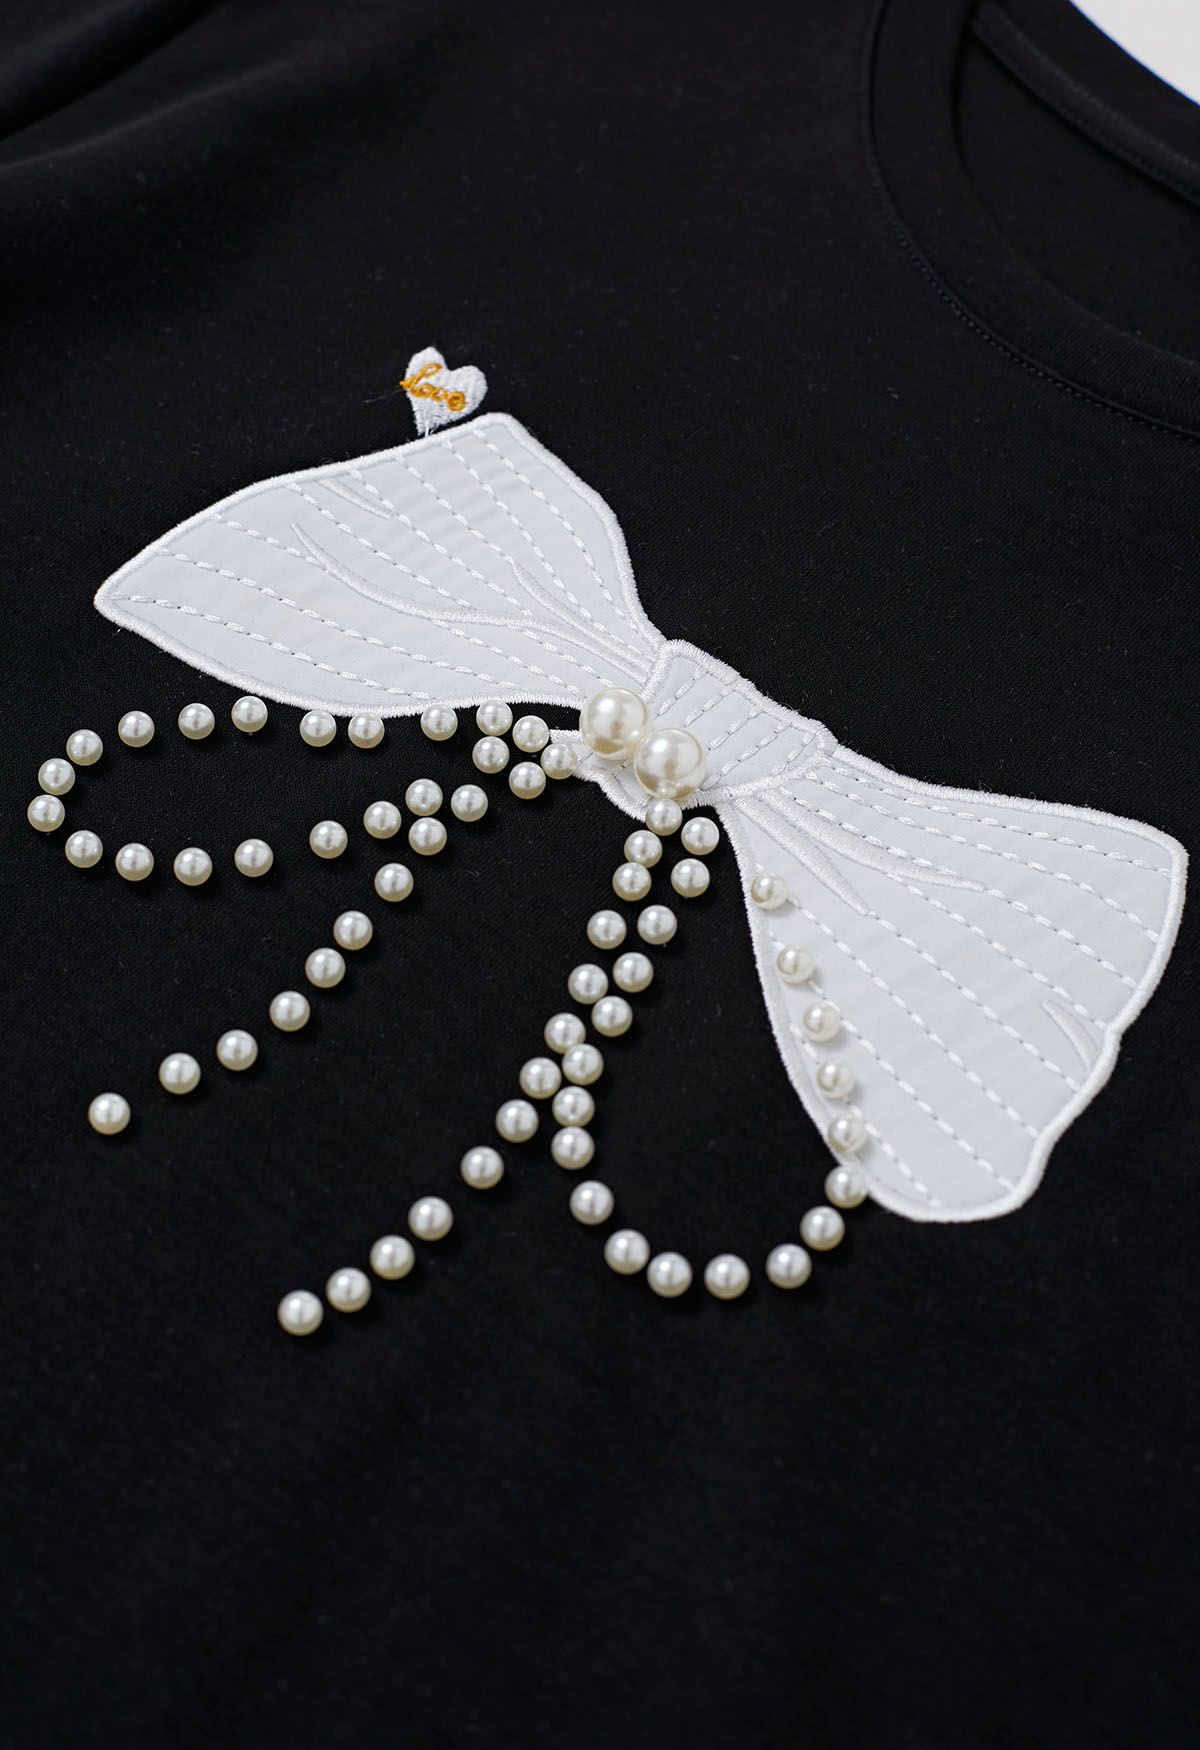 Camiseta negra con adornos de perlas y estampado de lazo